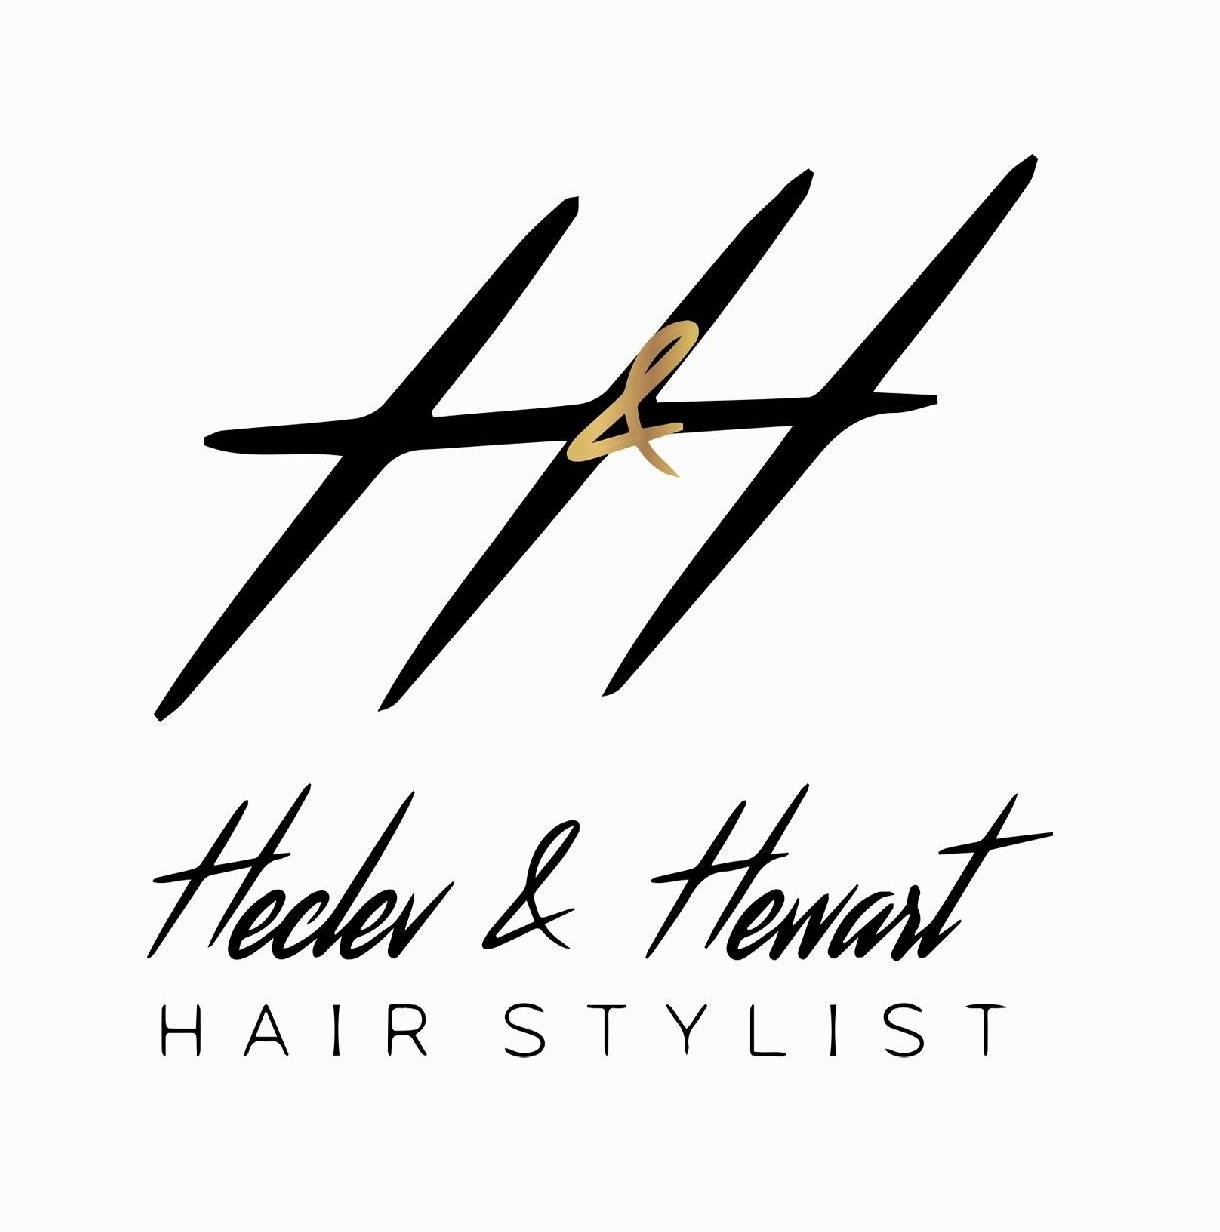 Heclev & Hewart Hair Stylist